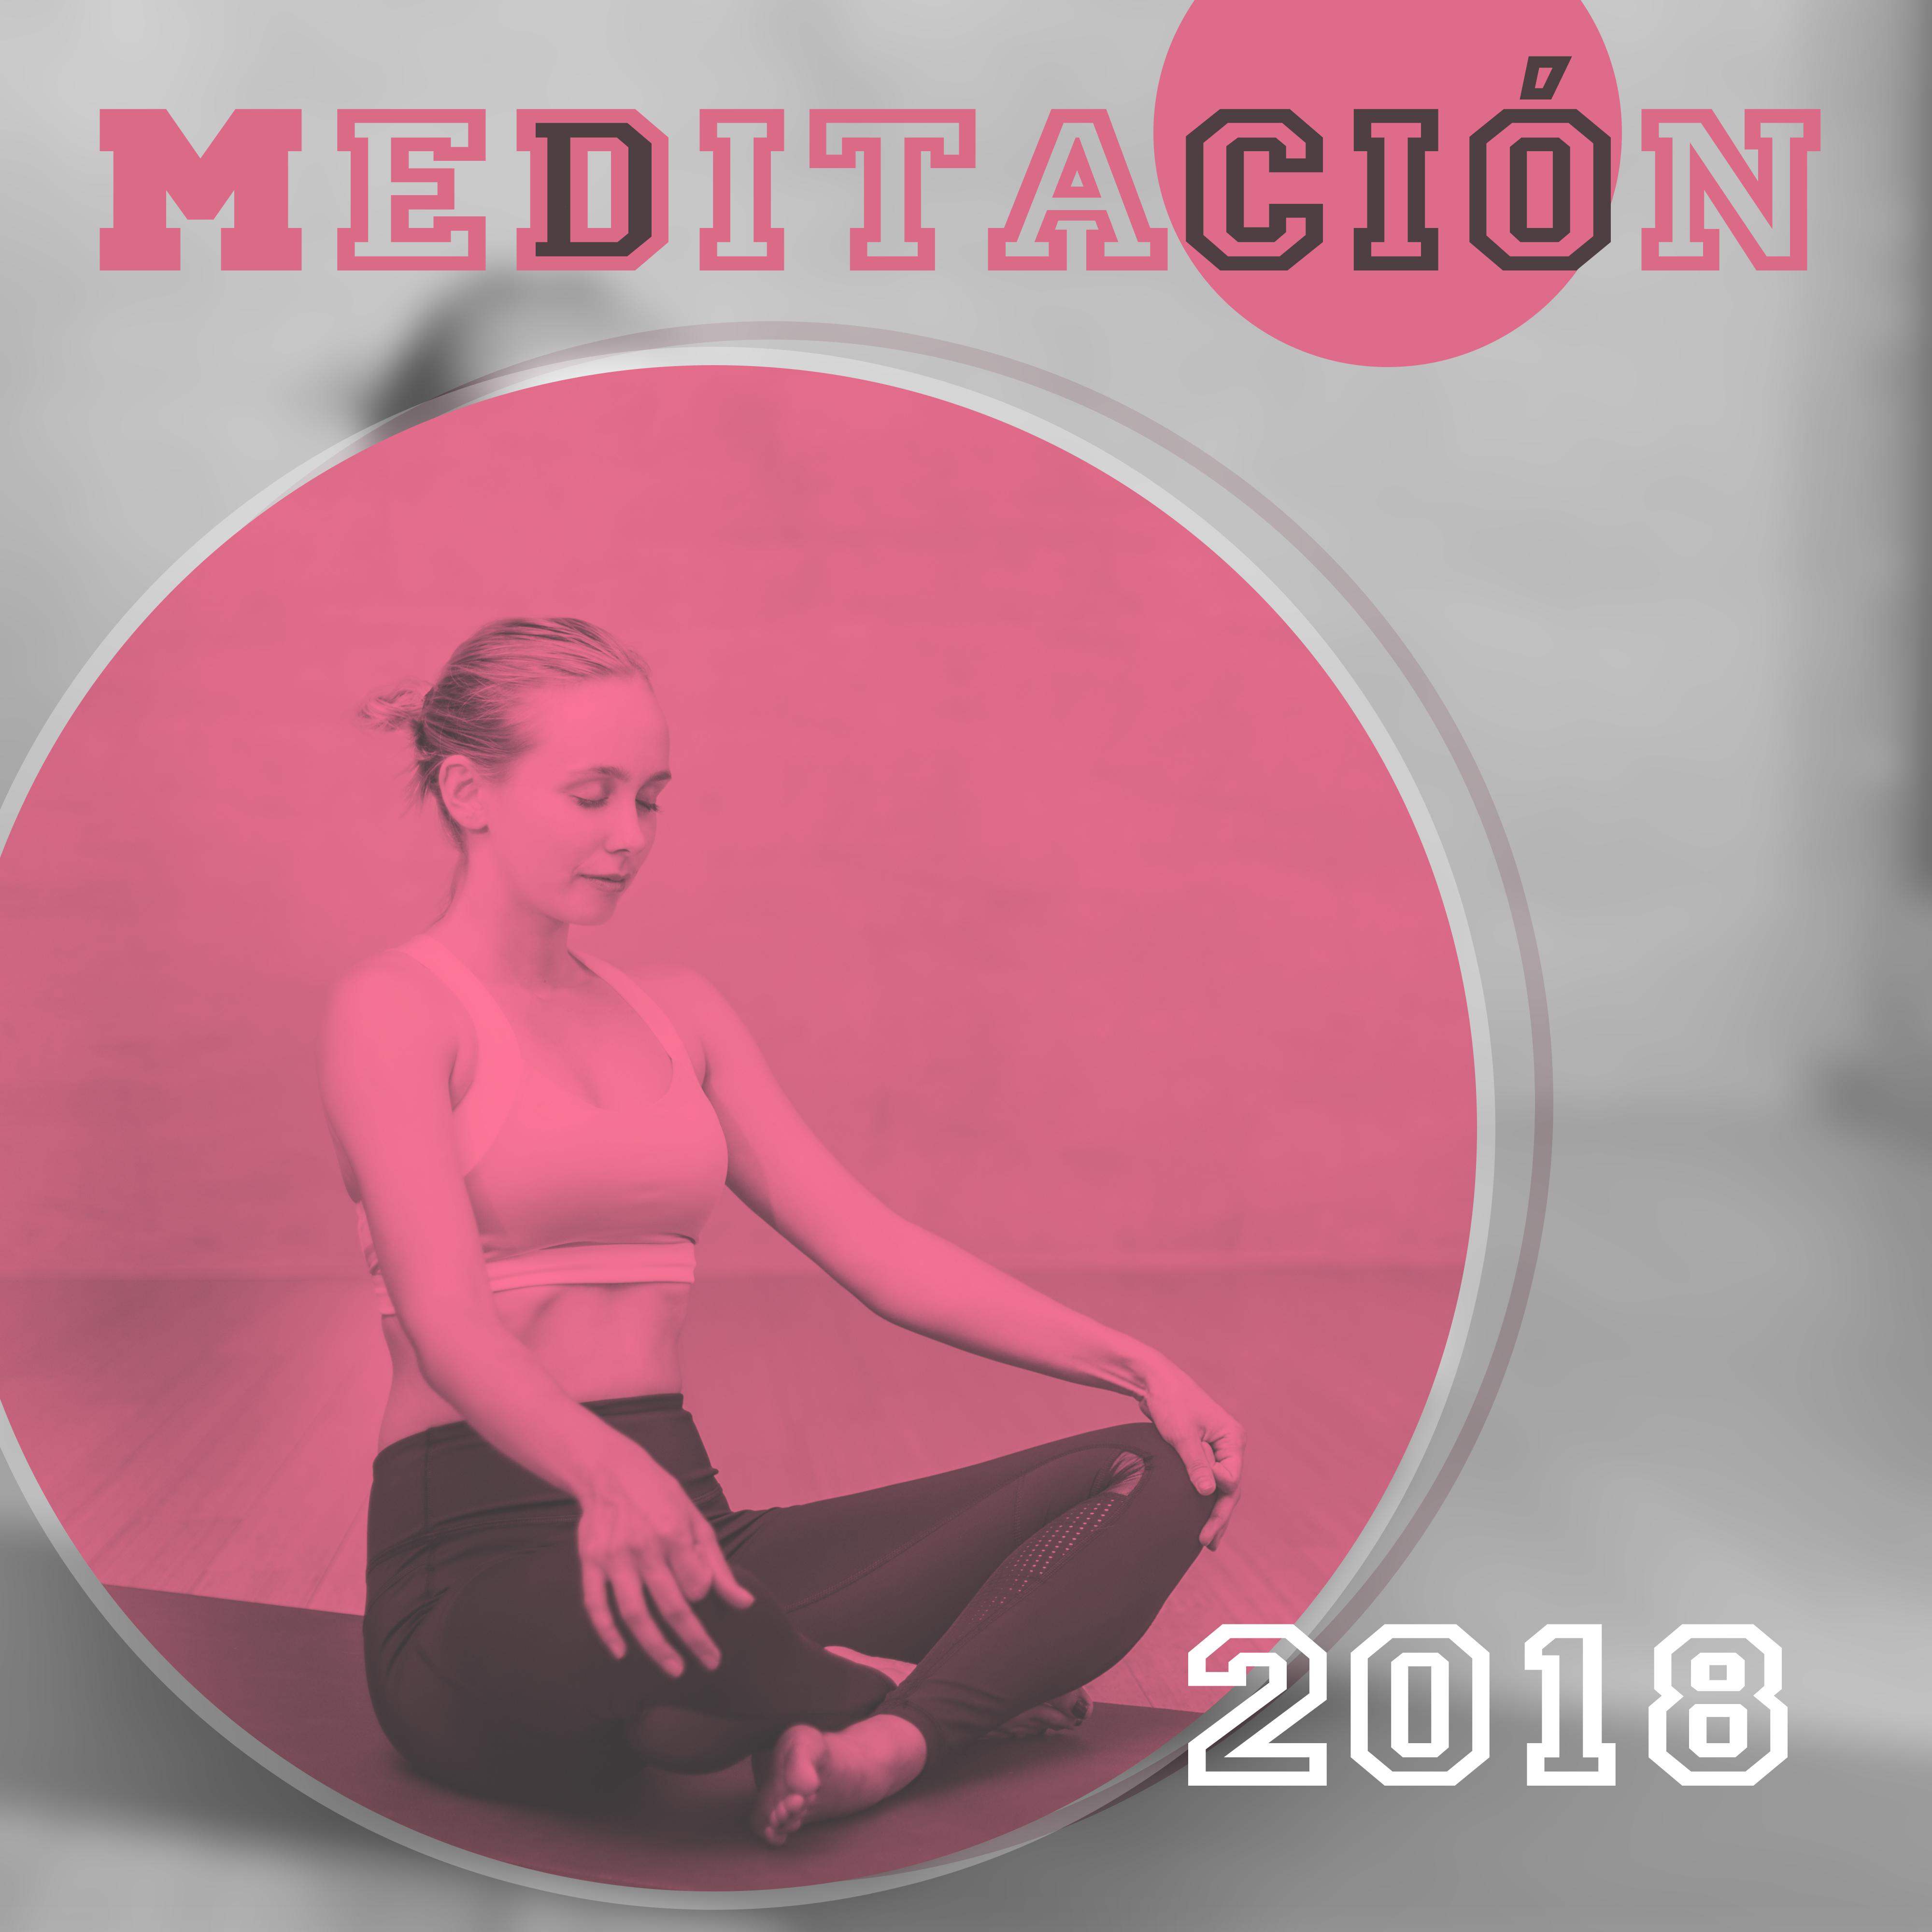 Meditacio n 2018